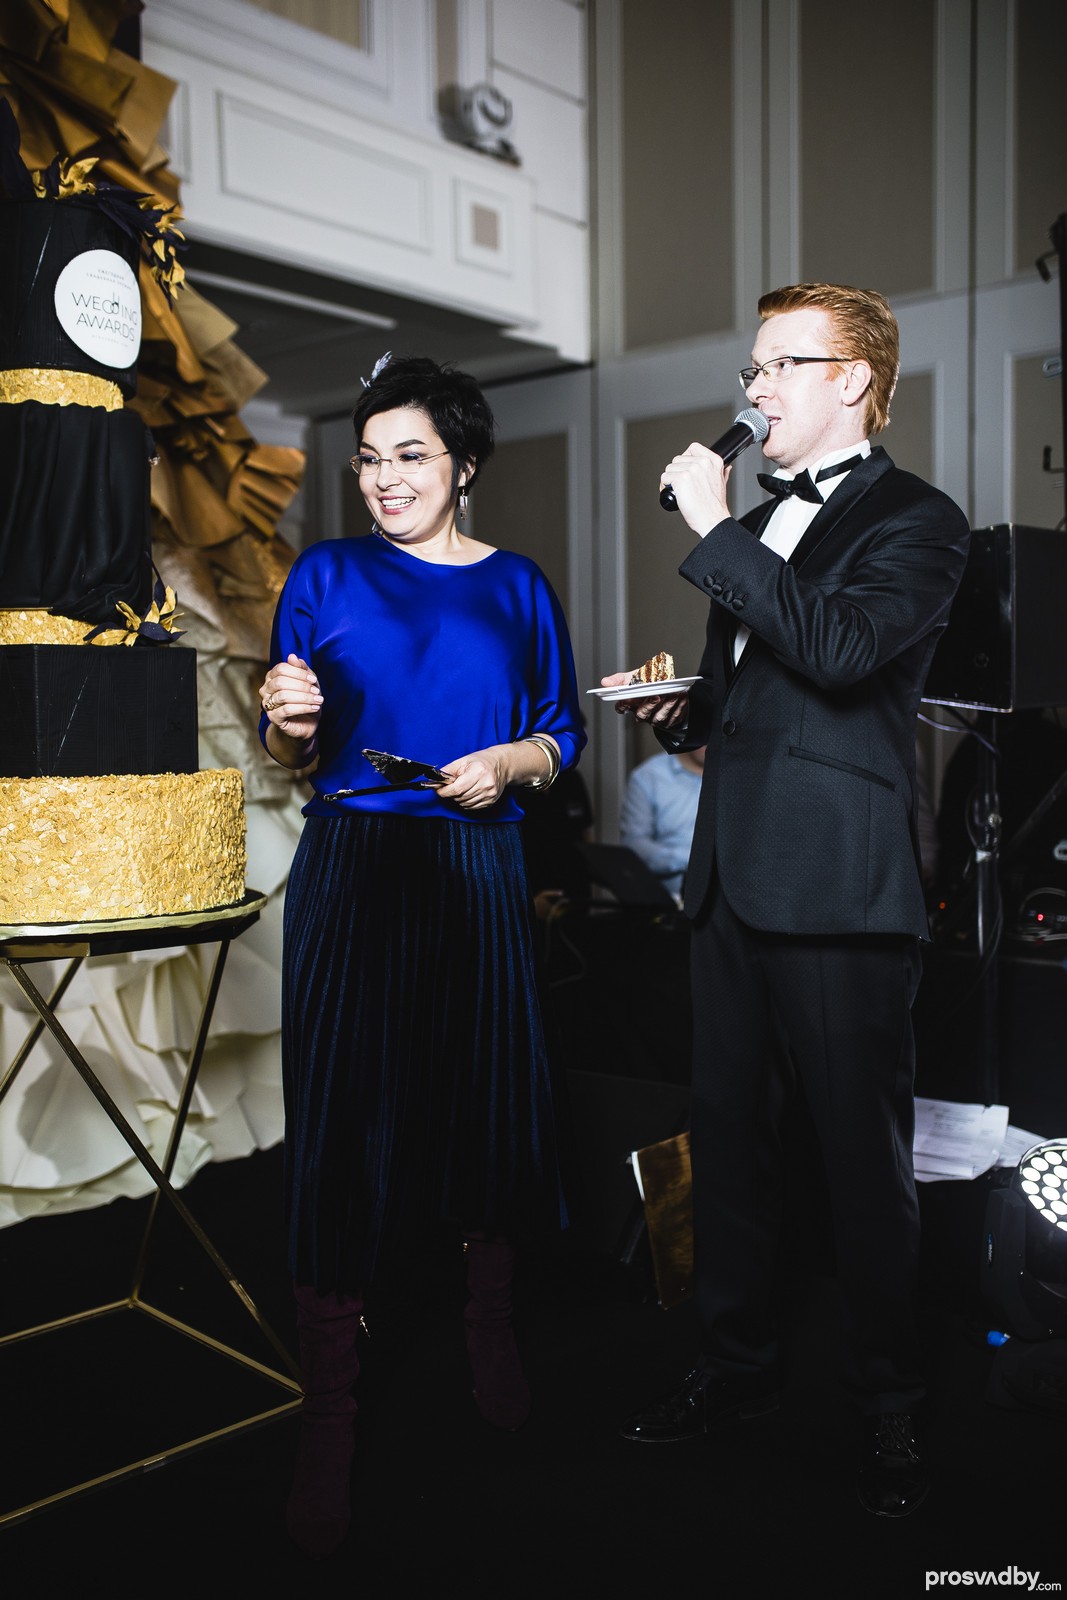 Первый кусочек торта с третьей свадебной премии достался шоумену Александру Шумскому за успешное проведение Свадебной феерии 2018.